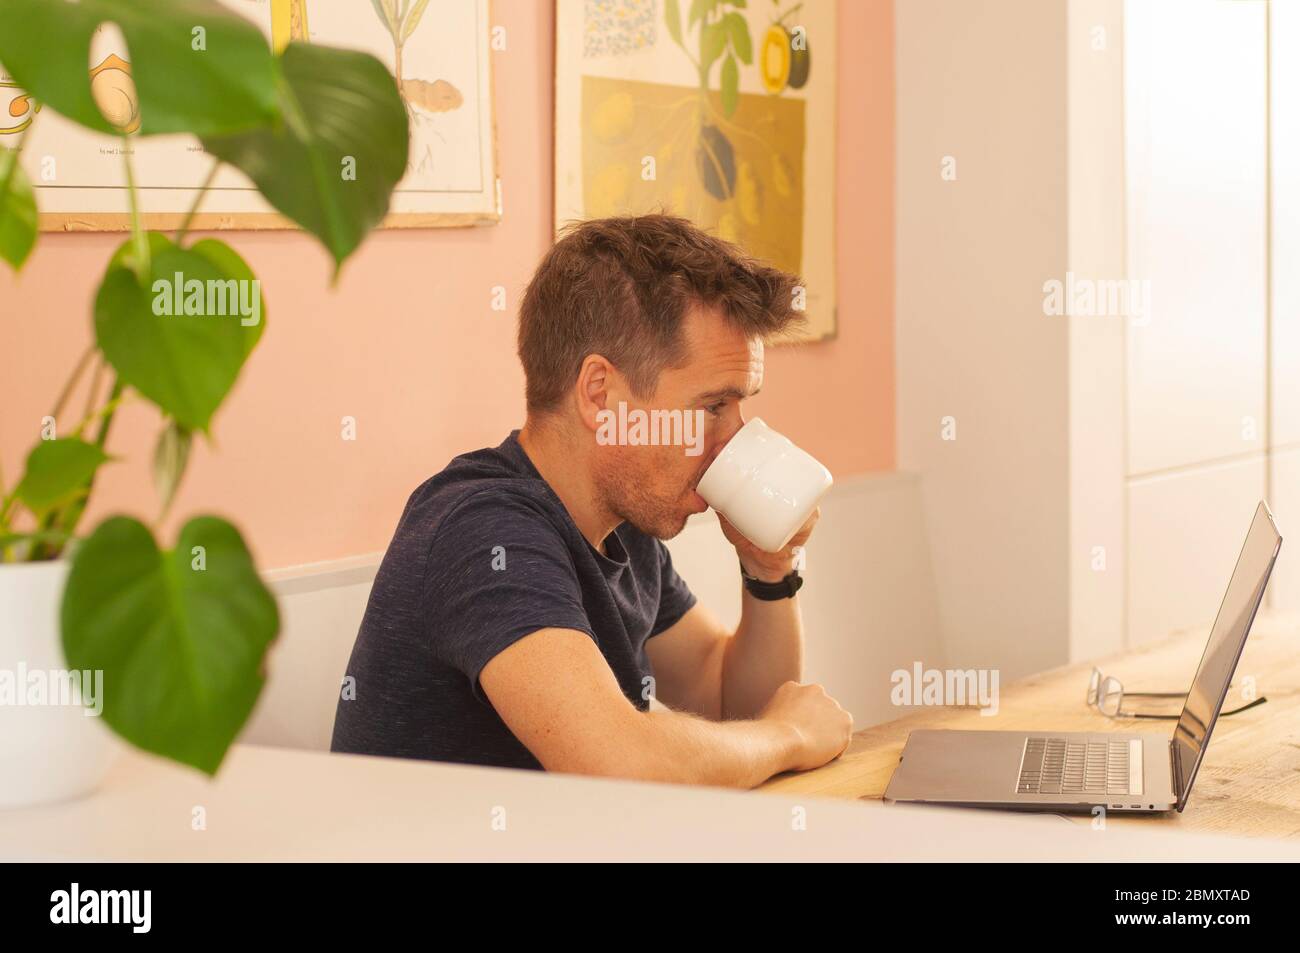 Porträt eines Mannes, der von zu Hause auf einem Laptop-Computer während der Coronavirus-Sperre arbeitet, Kaffee trinkt. Querformat. Stockfoto